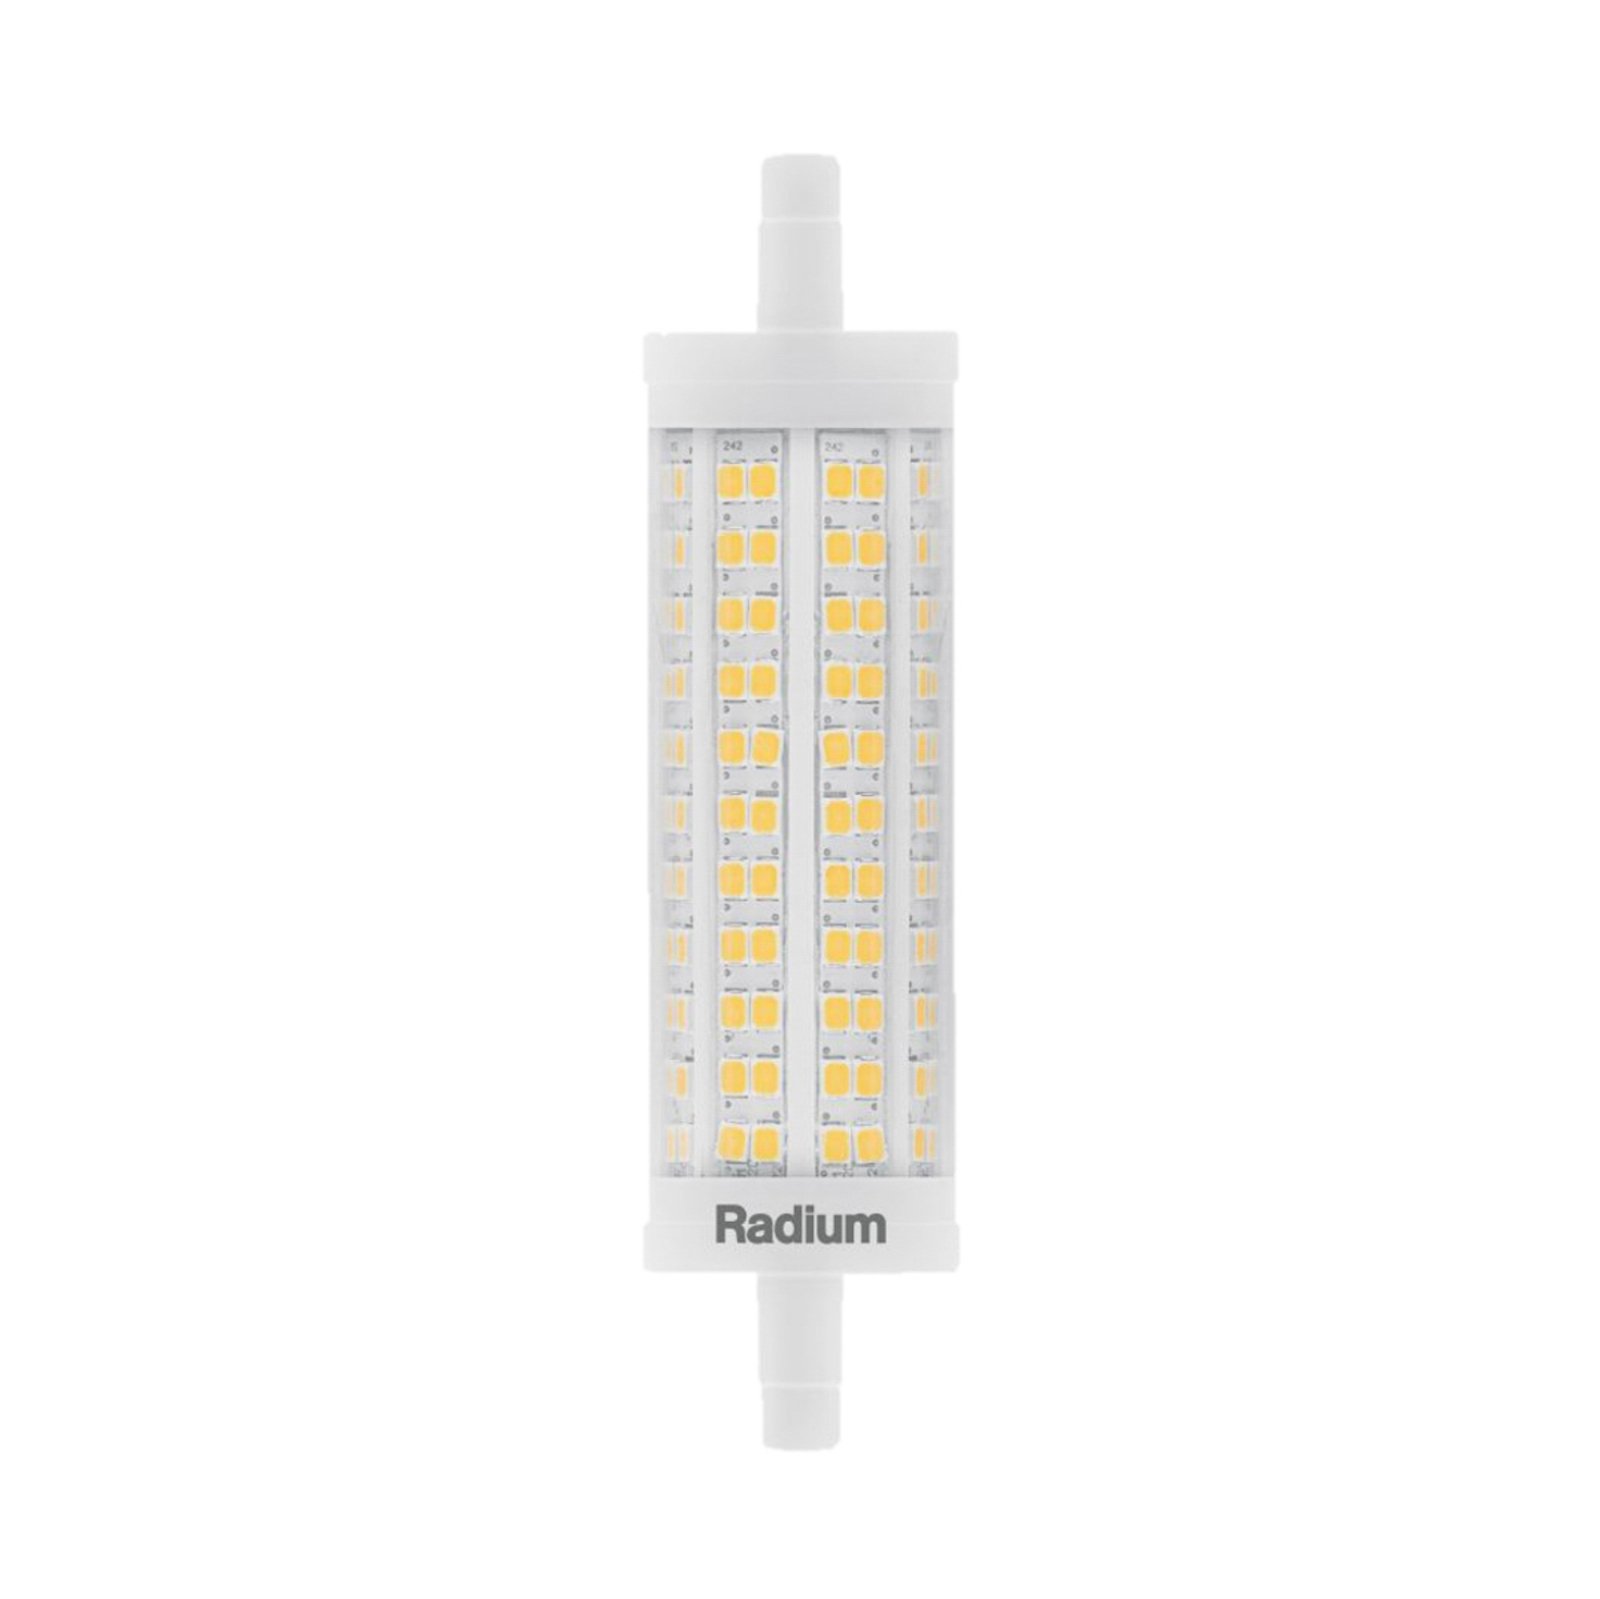 Radium LED Essence rörlampa R7s 17,5W 2452 lm